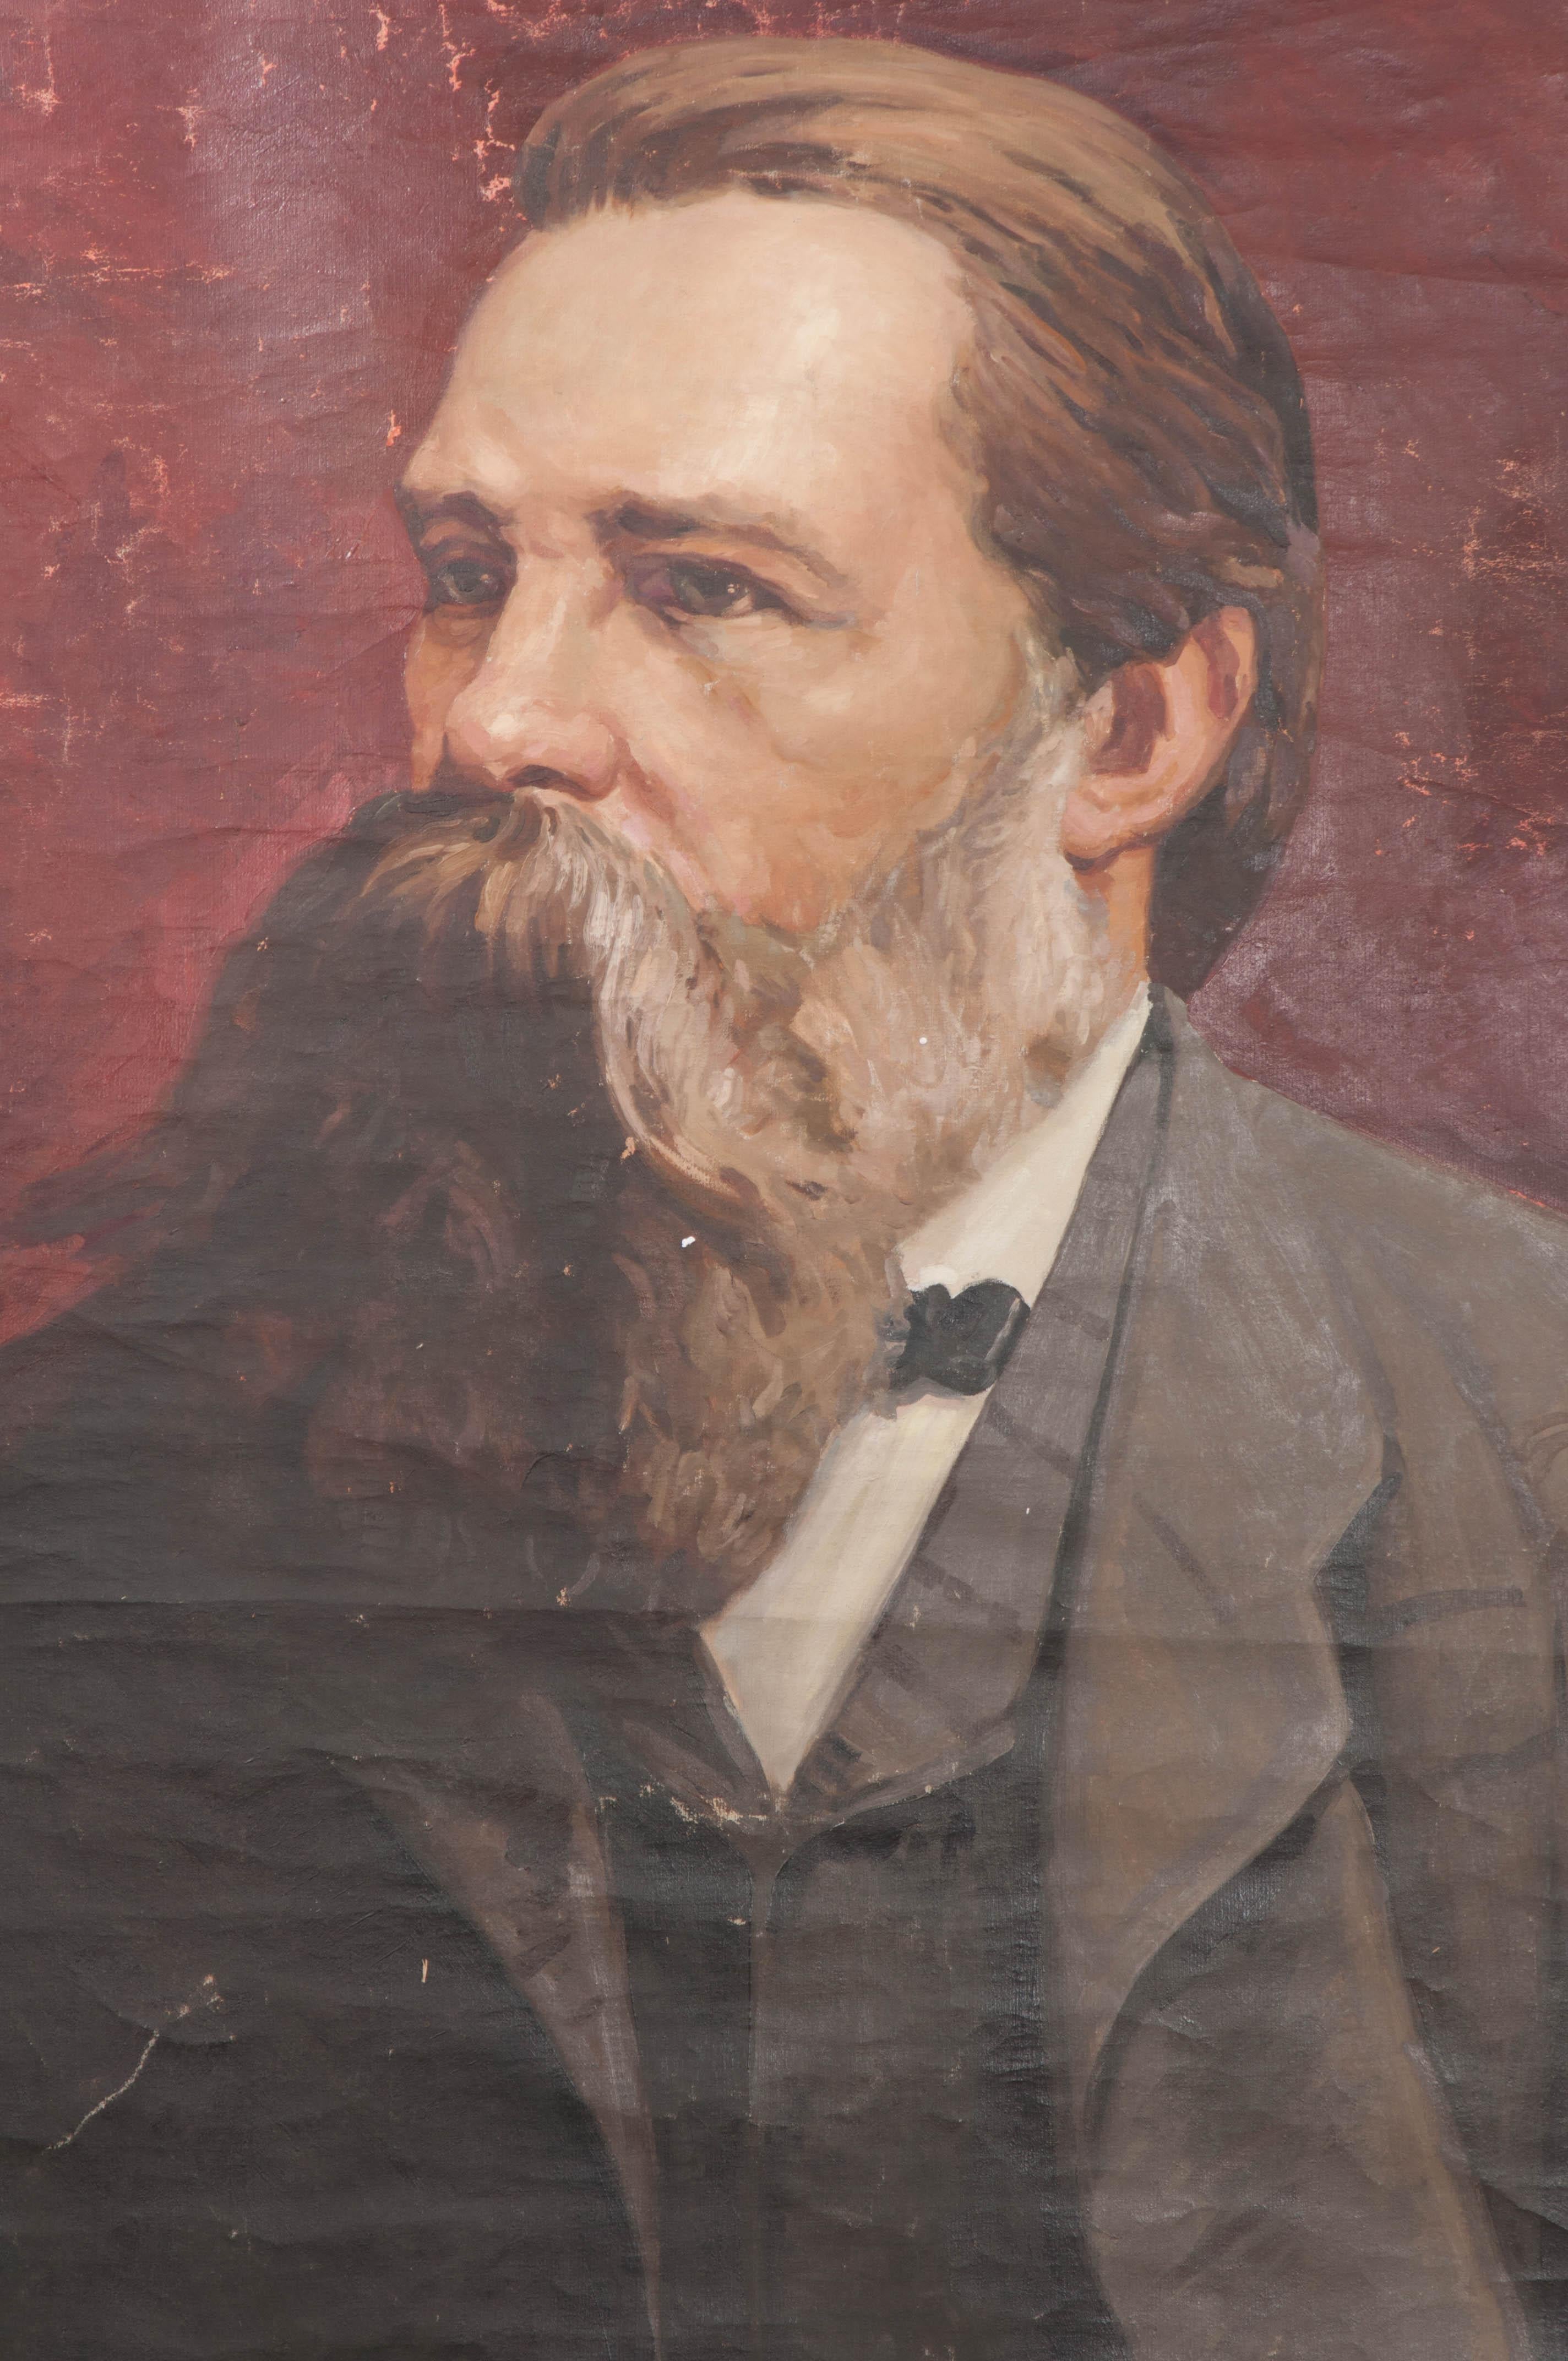 Friedrich Engels, fortement barbu, regarde au loin dans ce portrait massif sur toile allemande du XIXe siècle (1820-1895). Engels était l'un des principaux économistes politiques, philosophes, théoriciens politiques et socialistes révolutionnaires